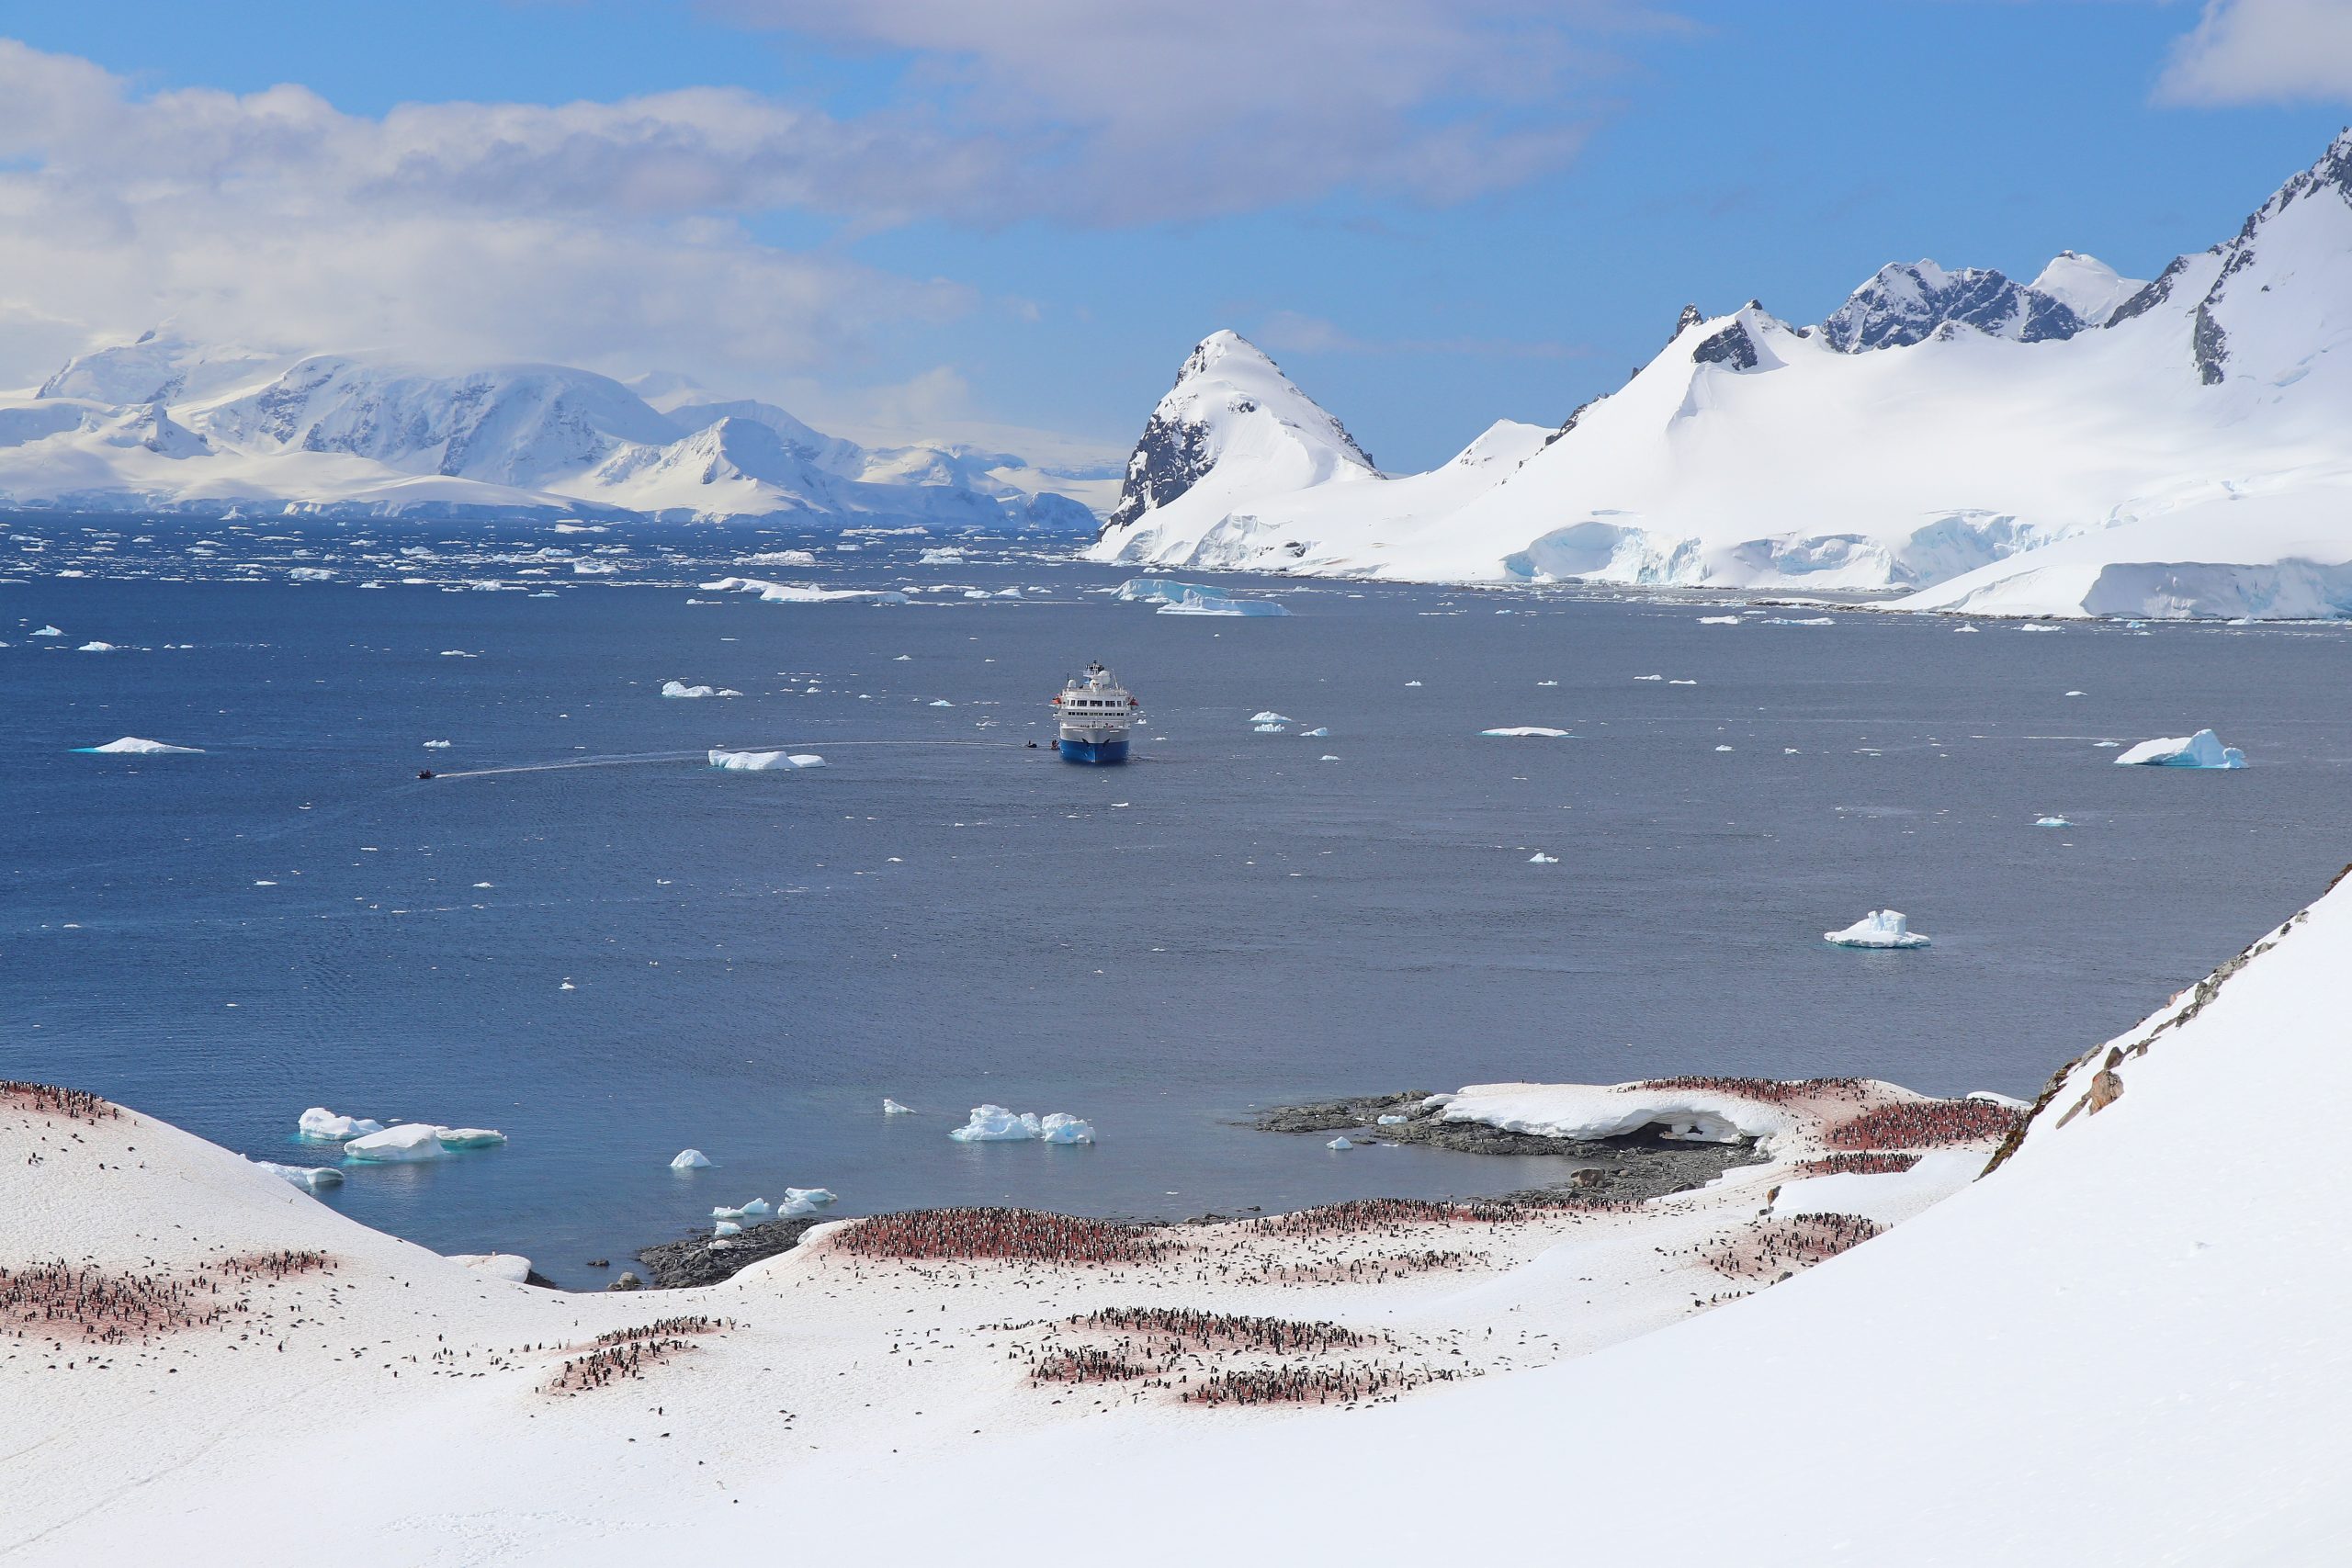 The Seaventure in Antarctica